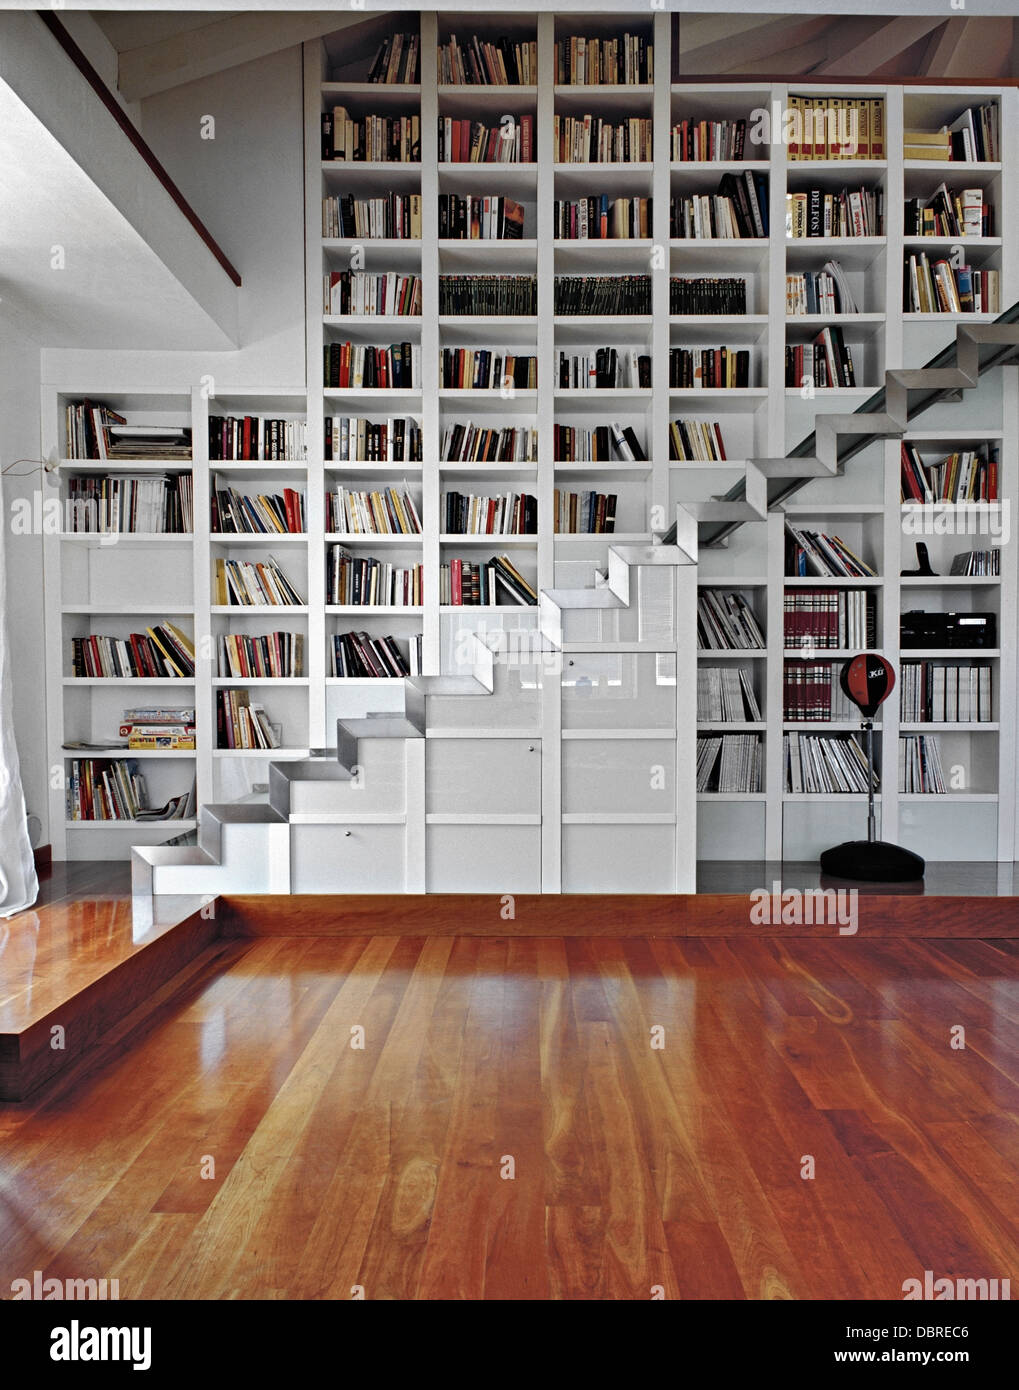 eiserne Treppe für ein modernes Wohnzimmer mit Holzboden und Bücherregal  Stockfotografie - Alamy